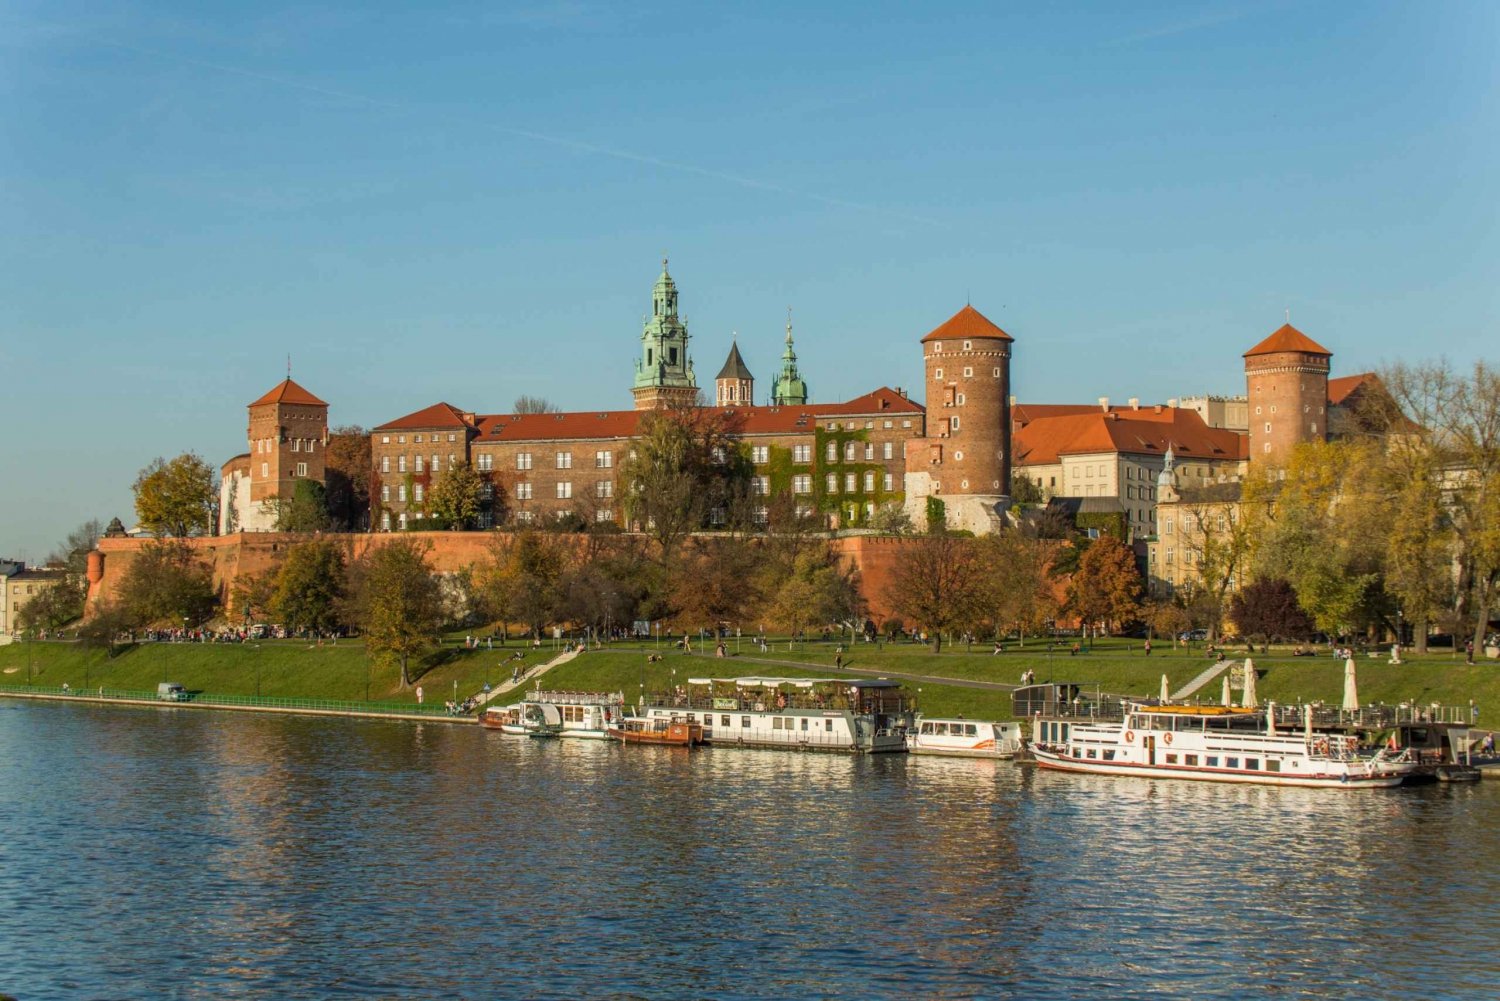 Krakau: Wawel Schloss, Kathedrale und Rynek Tour mit Mittagessen